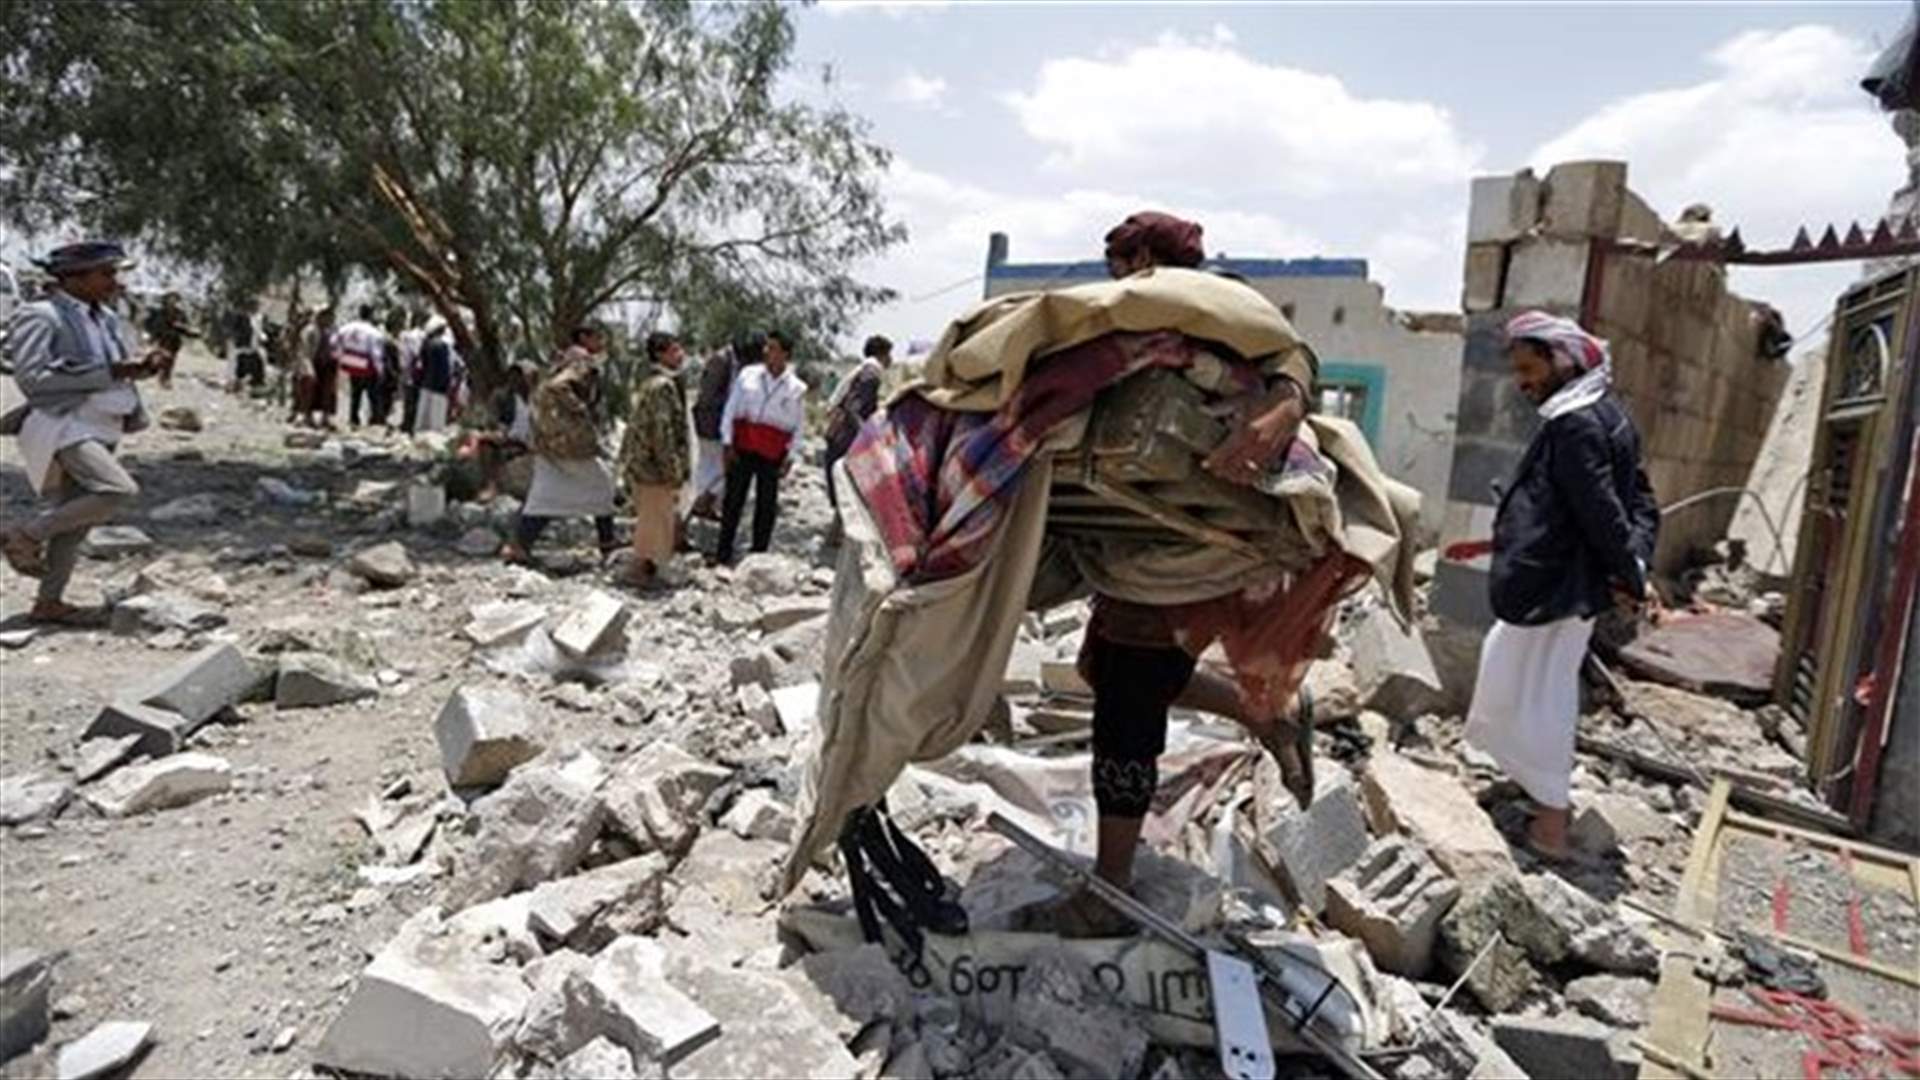 Warplanes hit Yemen capital, casualties include children - witnesses